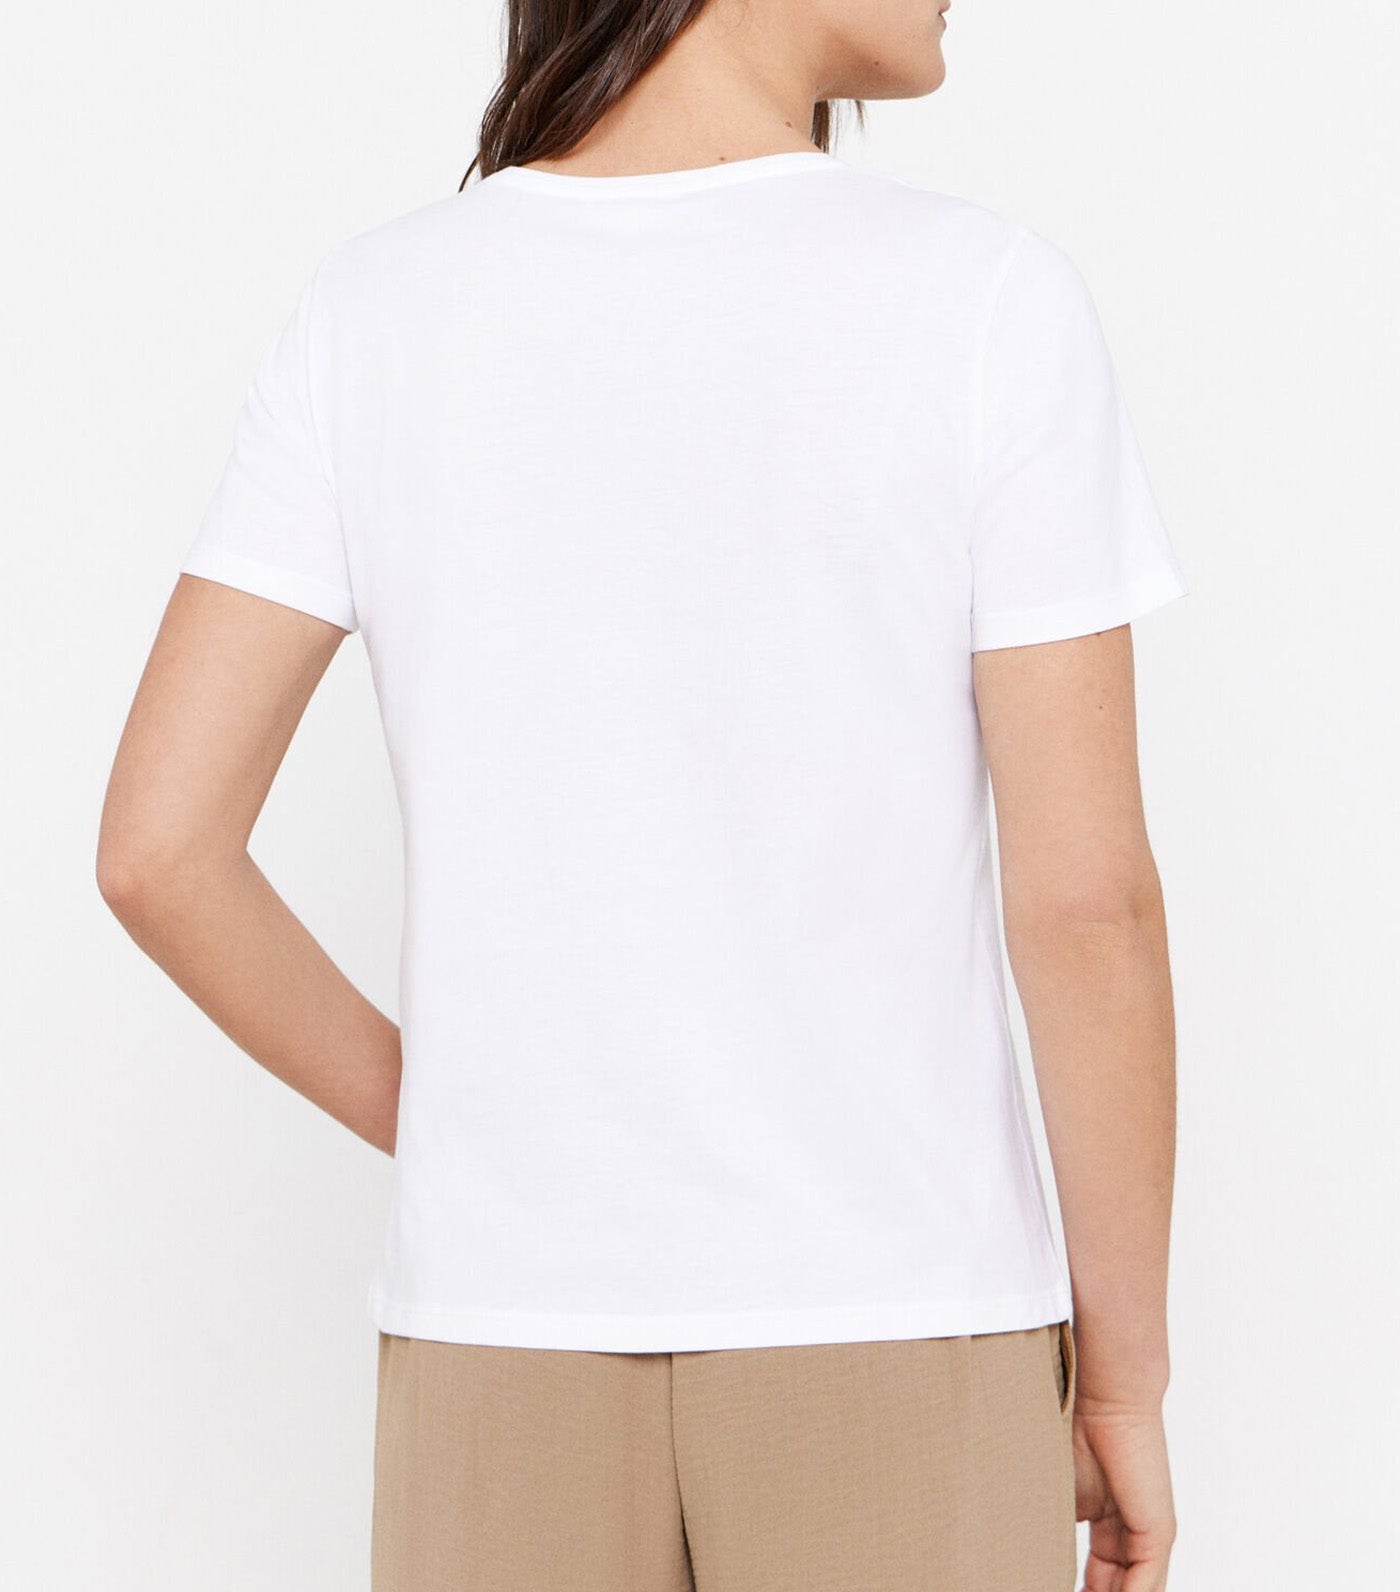 Printed T-Shirt Light Khaki